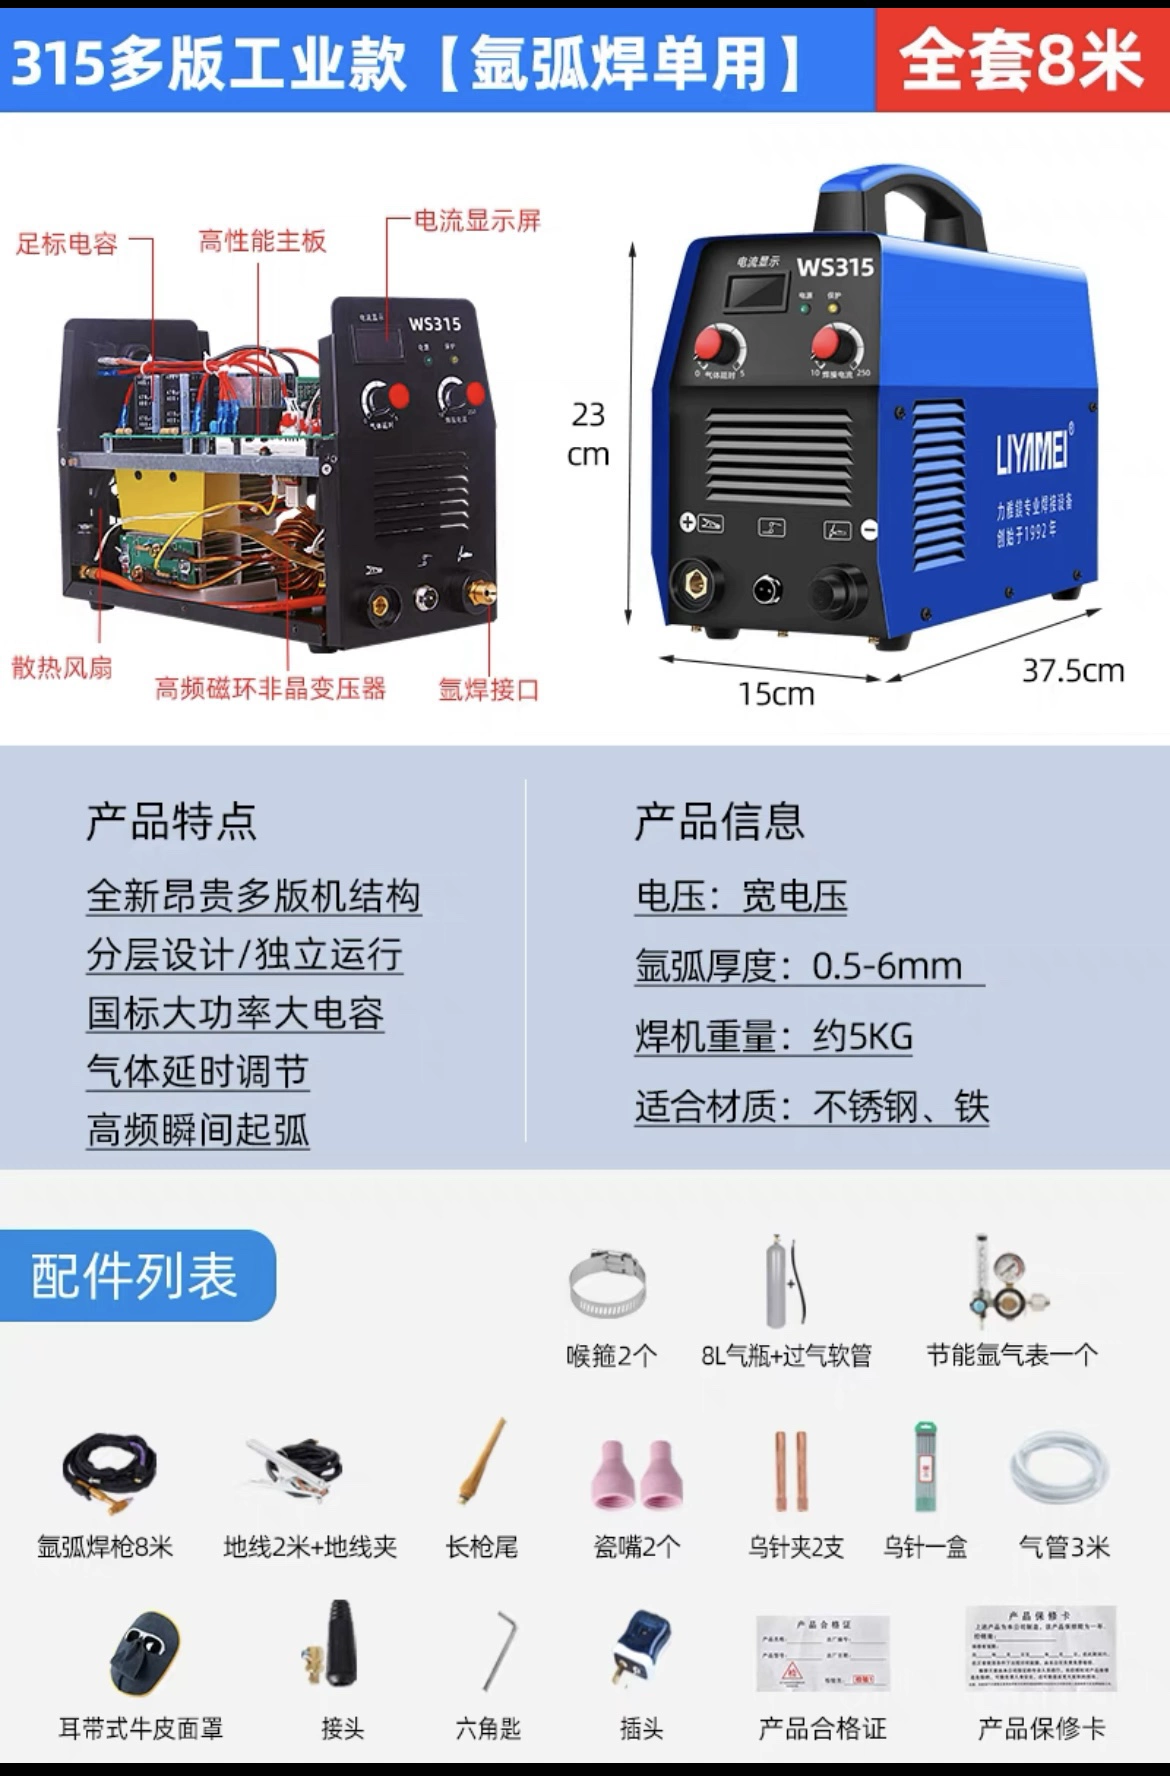 Đông Thành Liya Magiê WS-250 Máy hàn thép không gỉ cấp công nghiệp 220V máy hàn hồ quang argon nhỏ hộ gia đình máy hàn điện kép máy hàn tig hồng ký Máy hàn tig